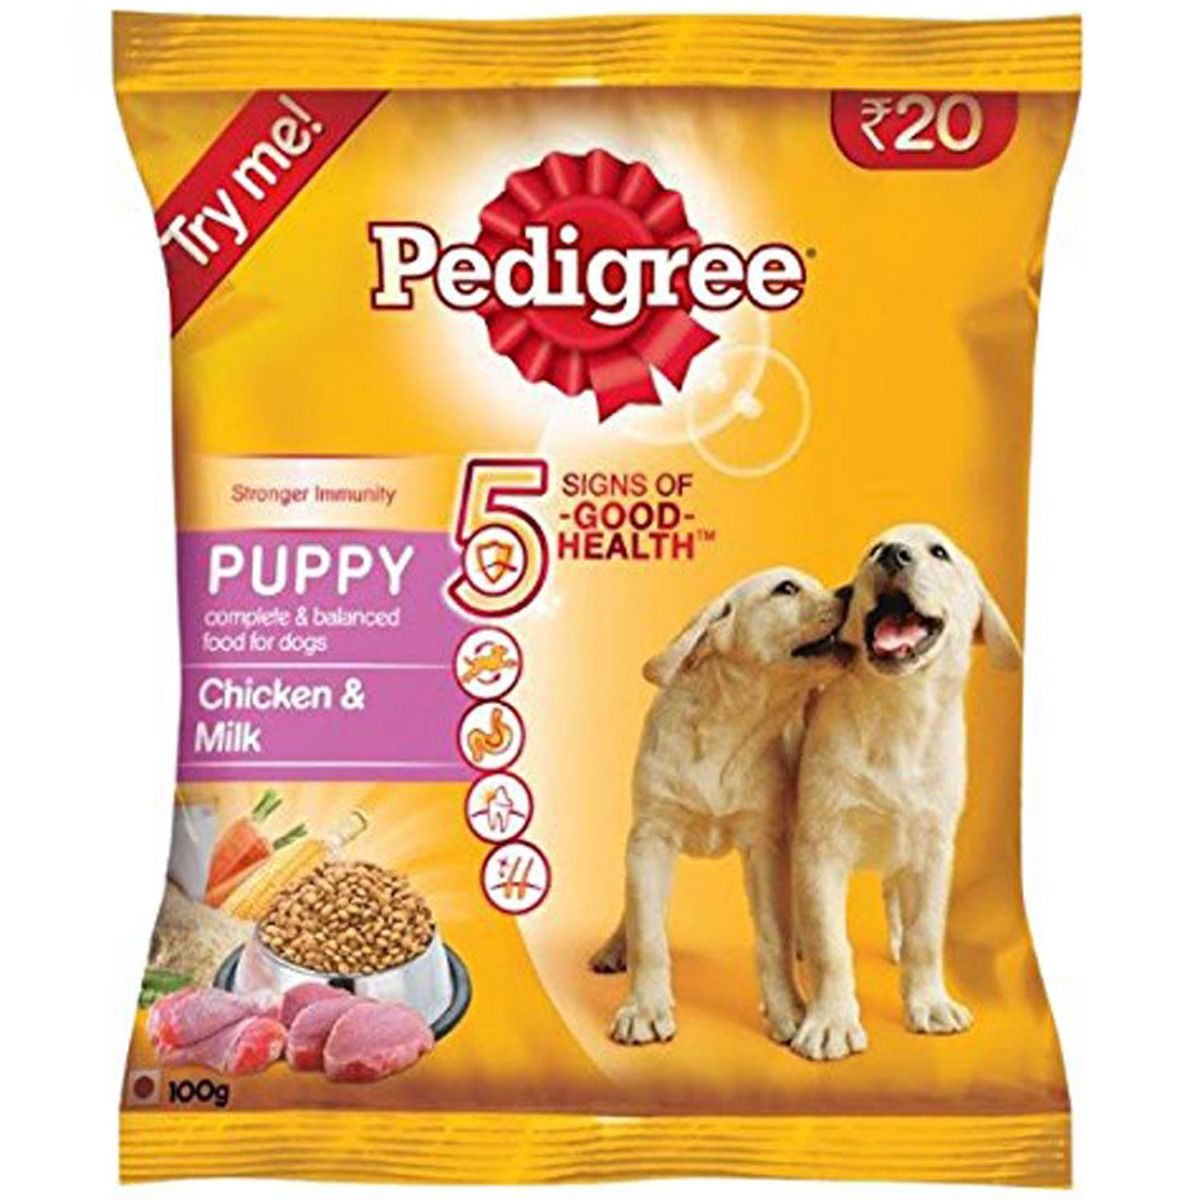 Pedigree Puppy Chicken & Milk 100g, Pack of 1 